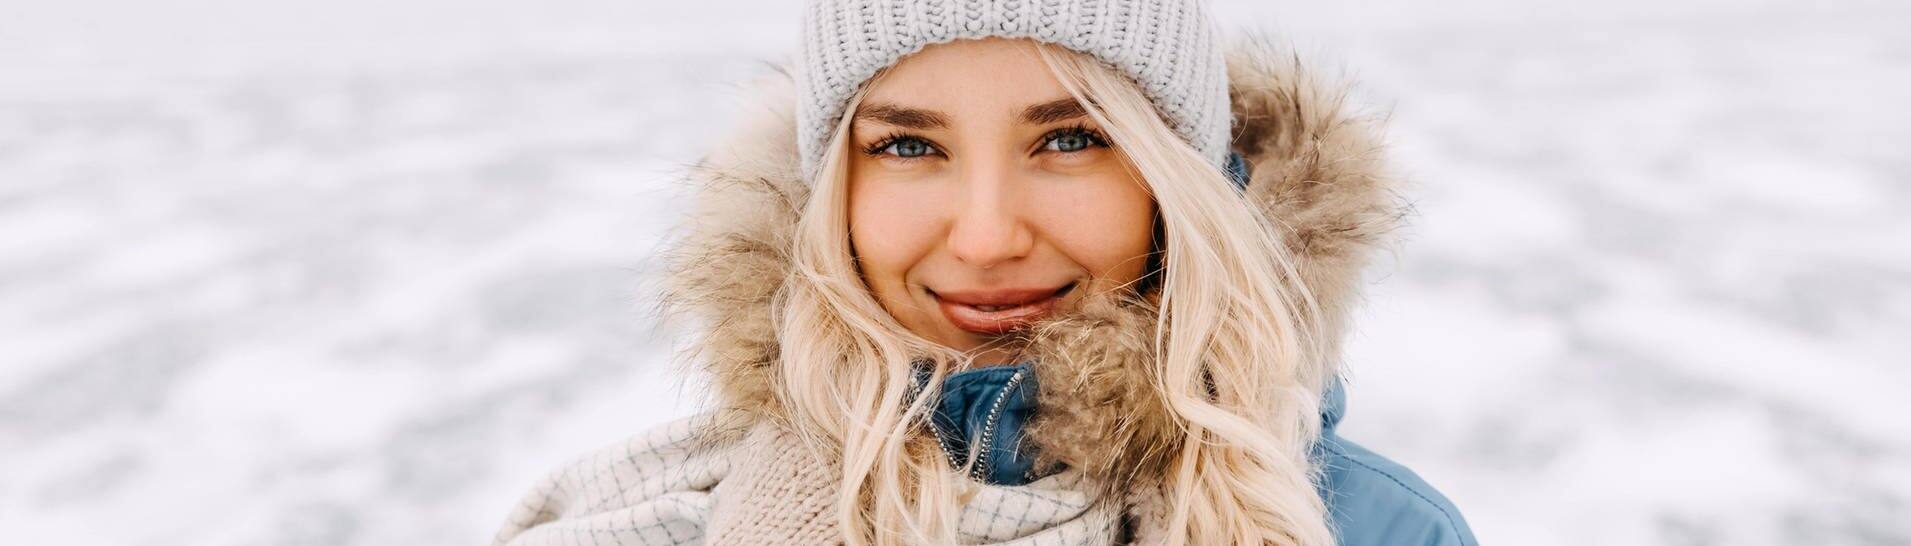 Junge Frau in Winter-Kleidung mit Mütze und Mantel steht in einer Schneelandschaft in der Kälte. Vielleicht denkt sie über Mythen rund um die kalte Jahreszeit nach. (Foto: Adobe Stock, Bostan Natalia)